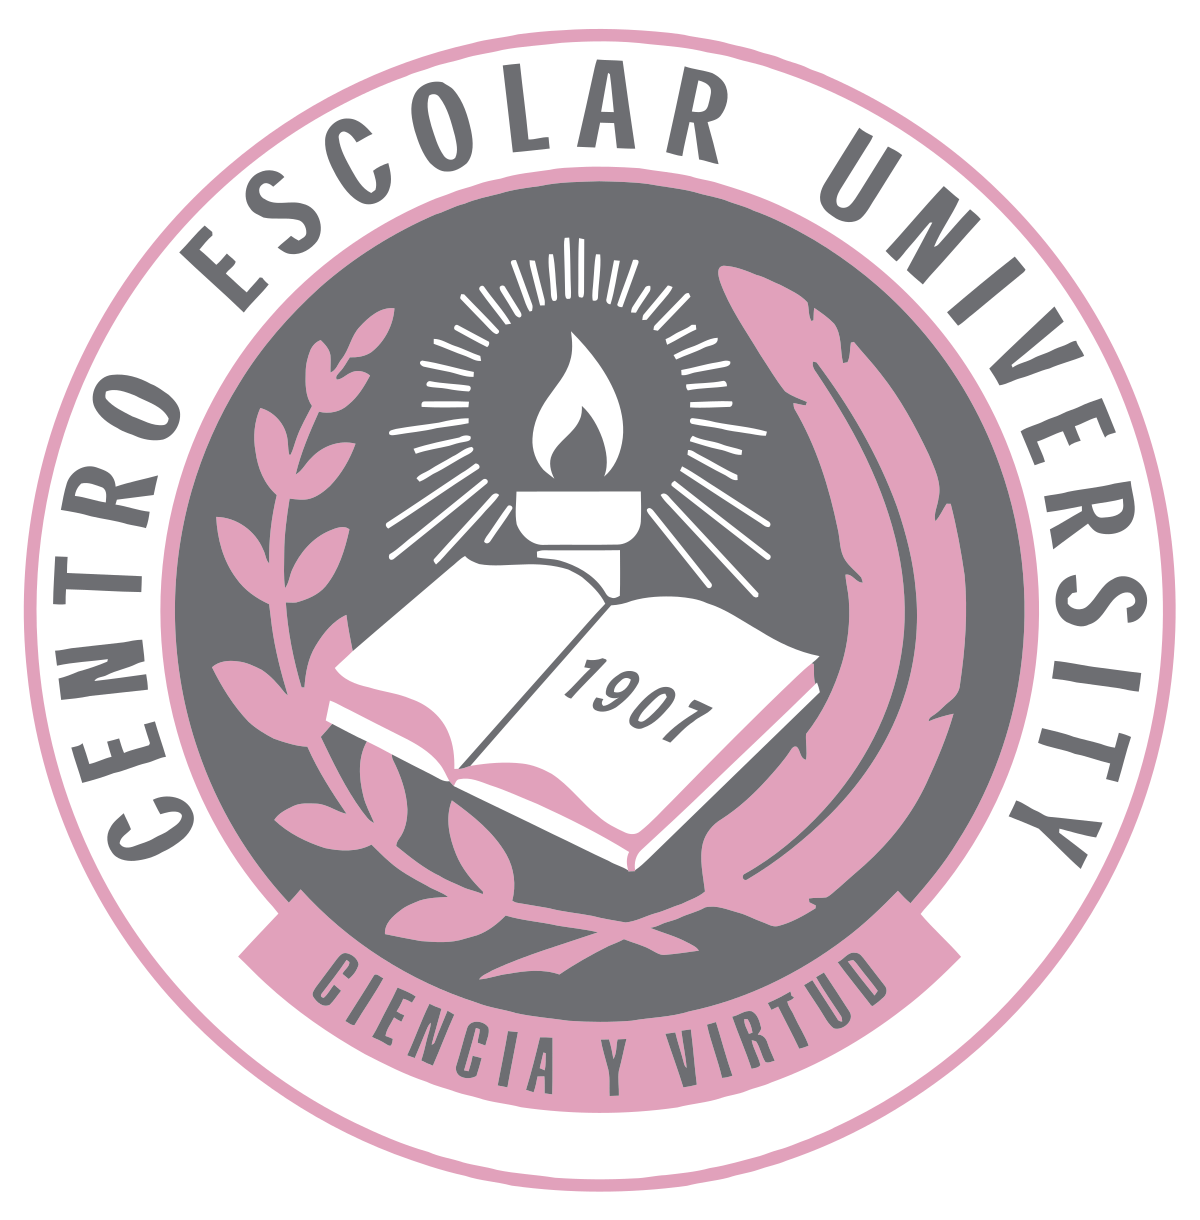 Centro Escolar University logo